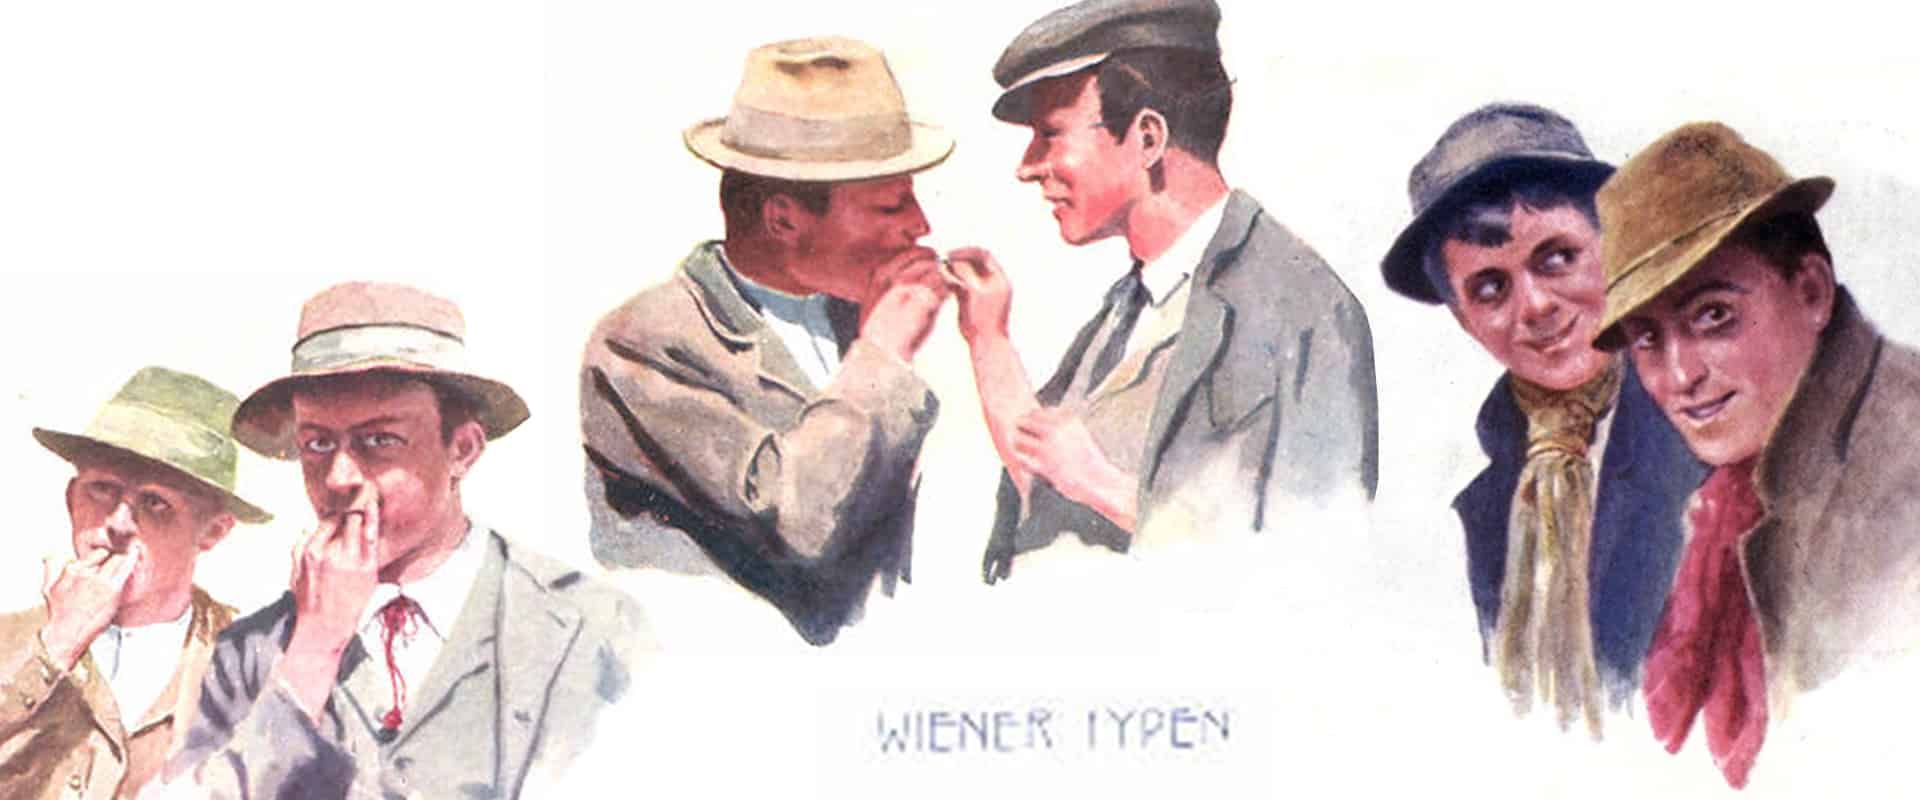 Wiener Typen